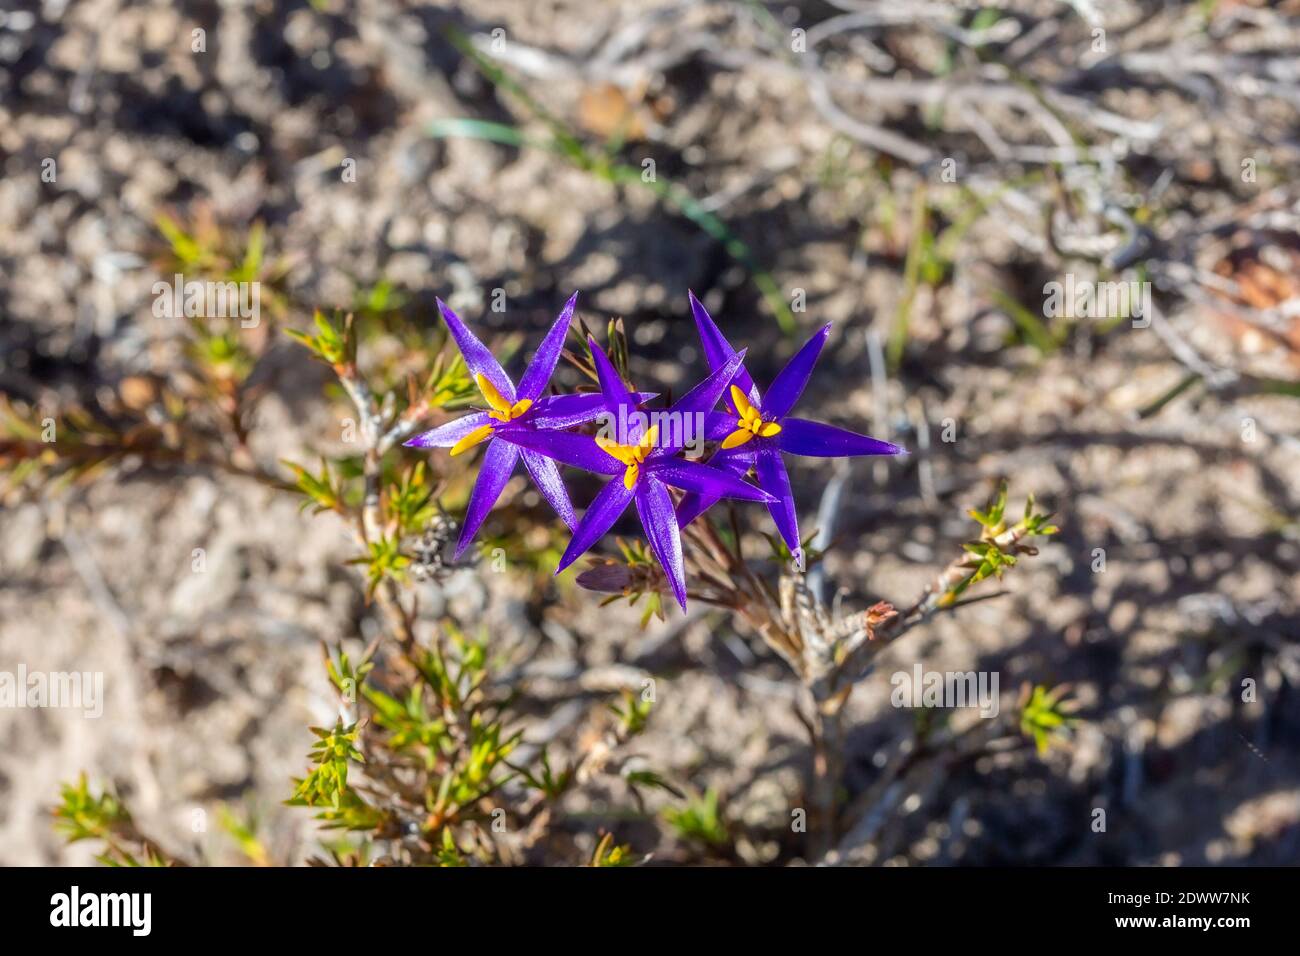 Schöne Blüten der blauen Lametta Lilie Calectasia grandiflora gefunden Im Strinlinge Range National Park in Western Australia Stockfoto